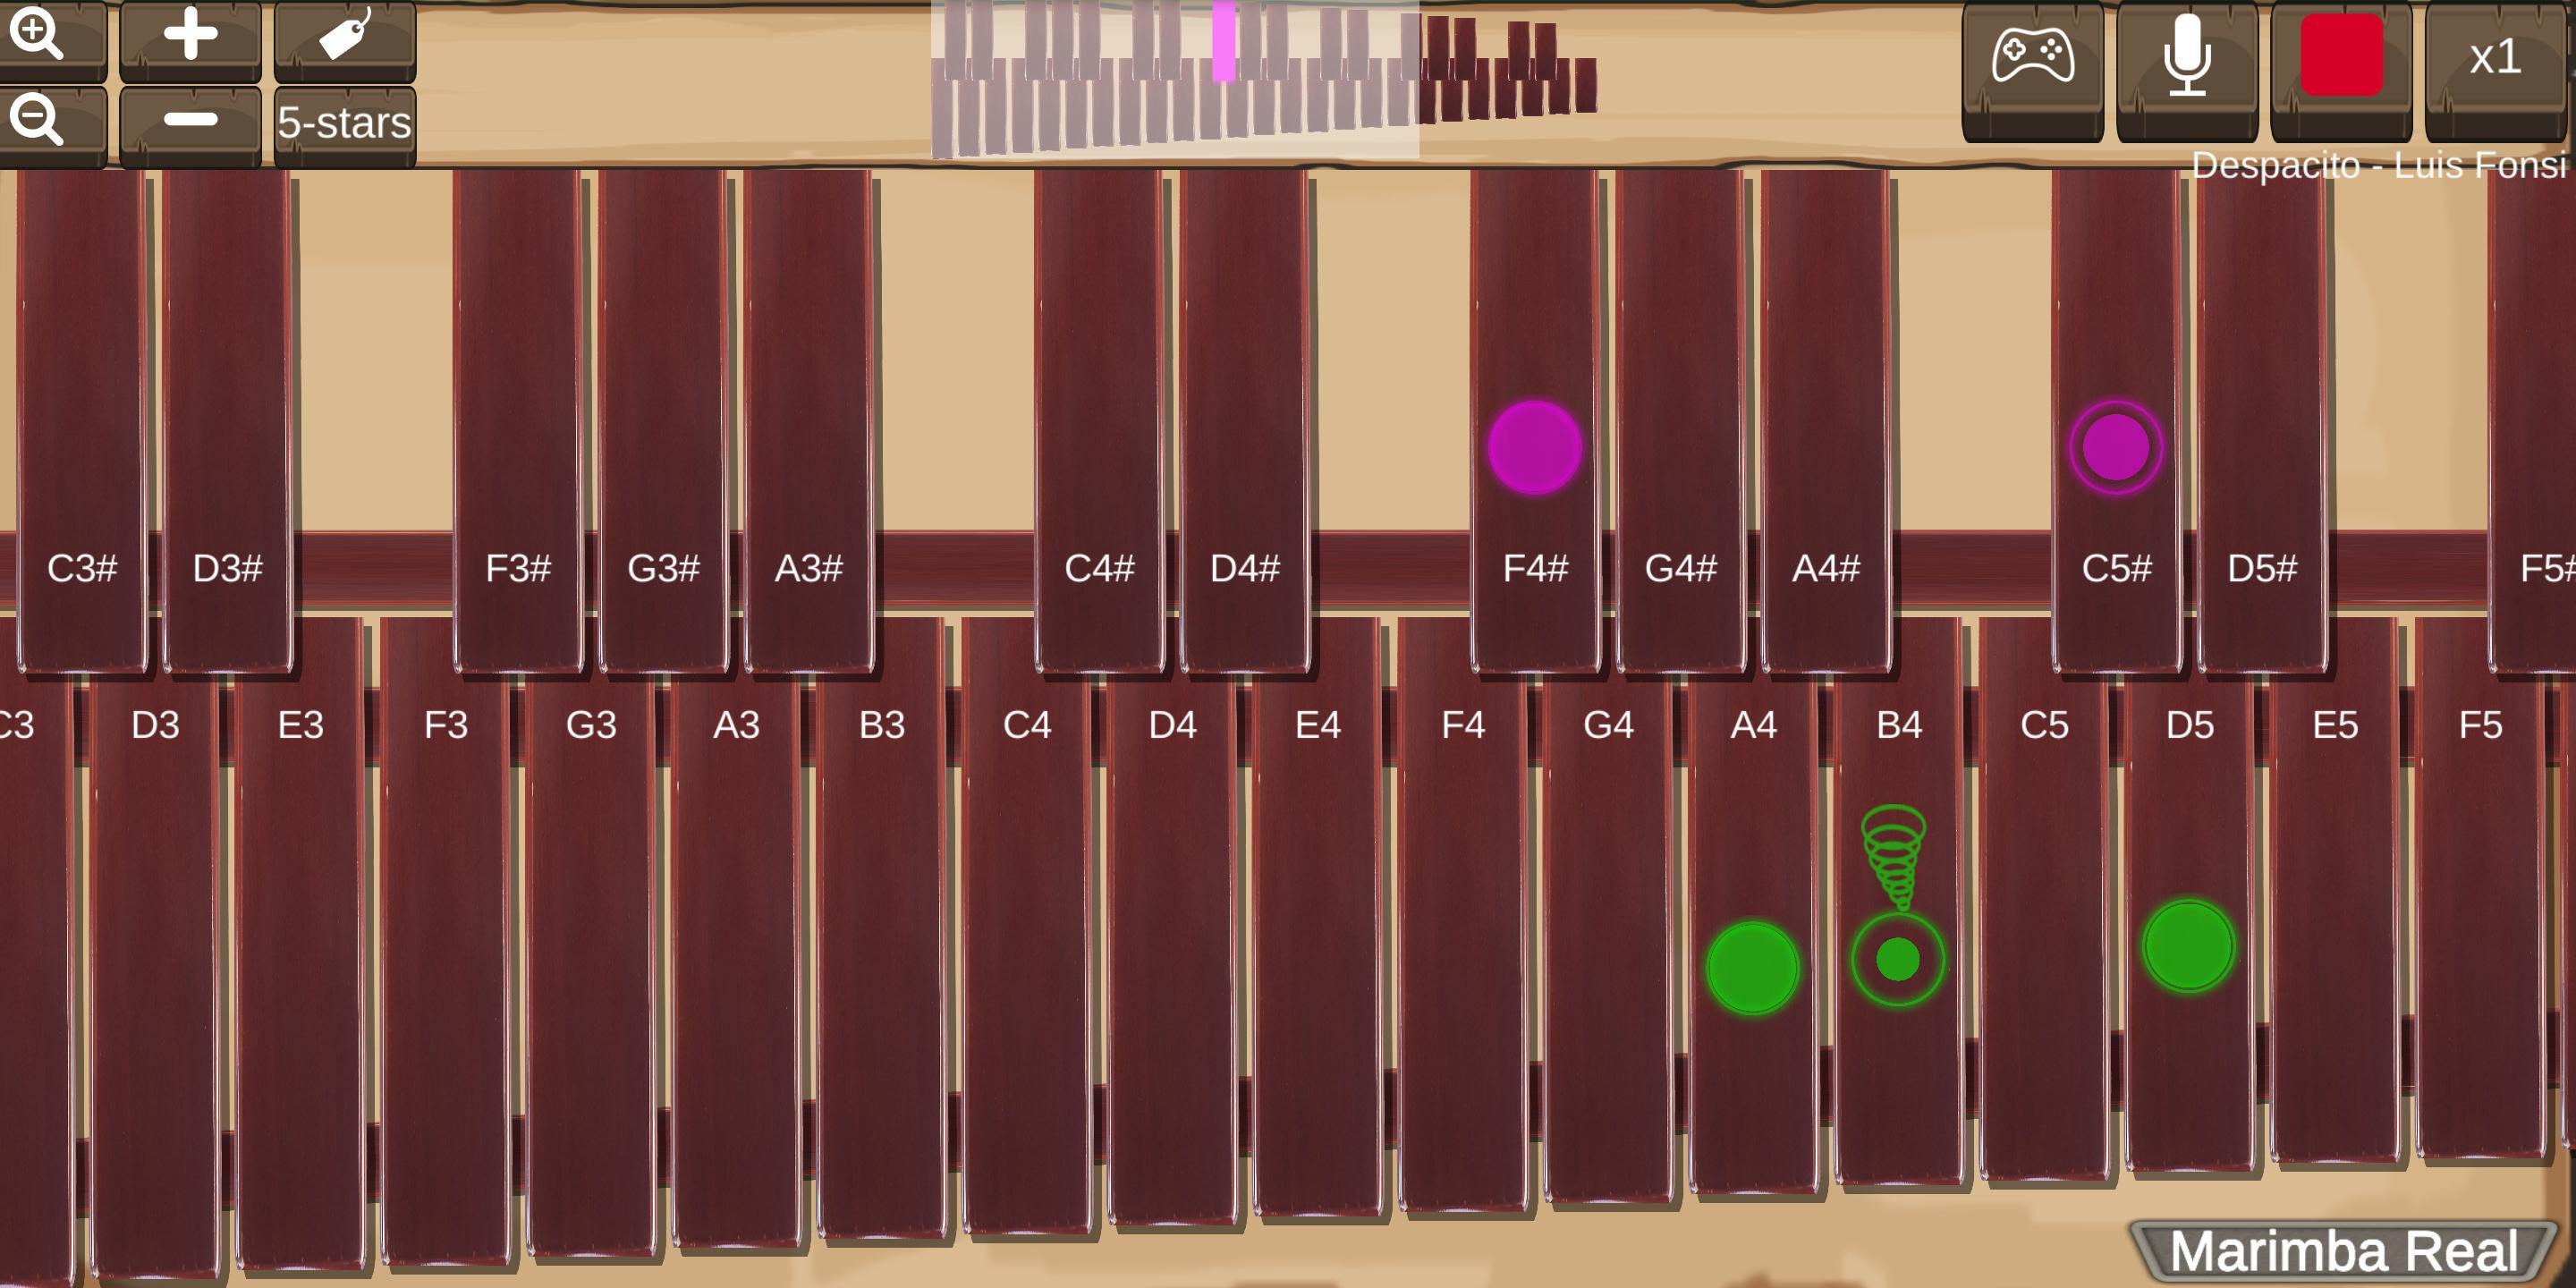 Marimba, Xylophone, Vibraphone Real遊戲截圖